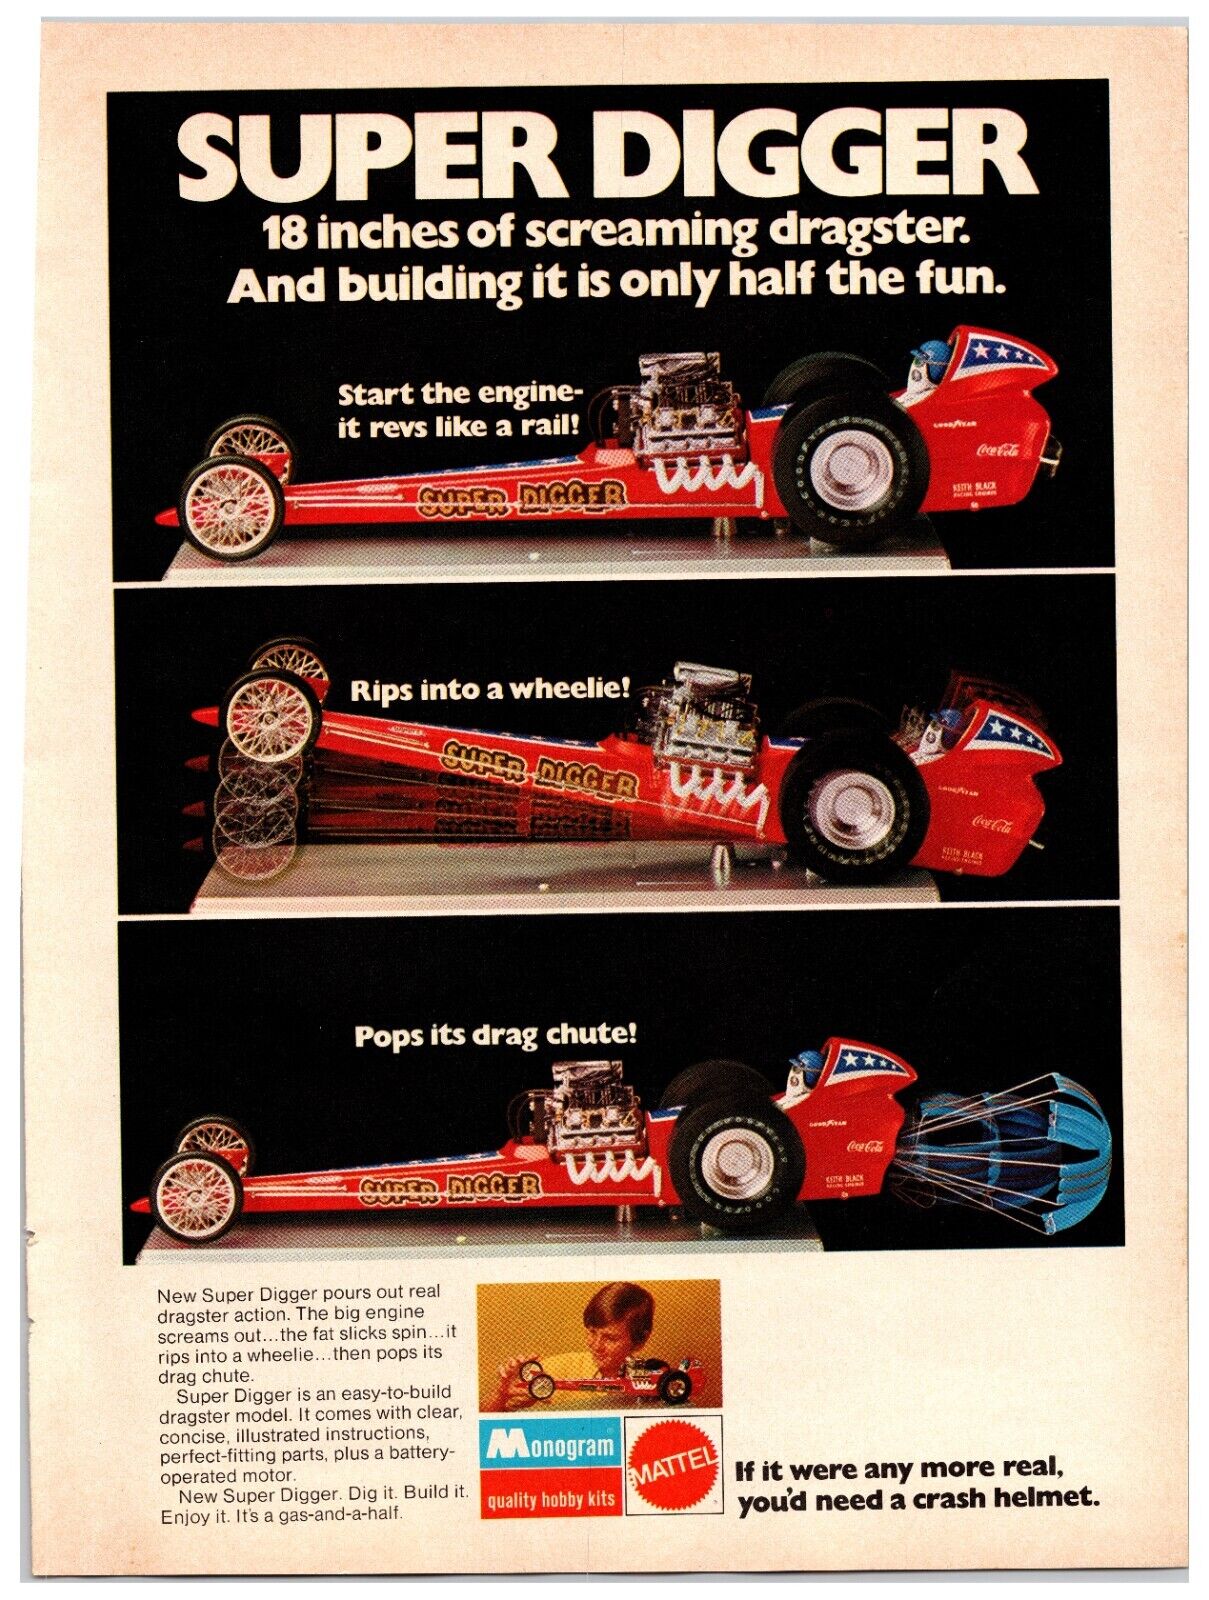 Vintage 1971 Mattel Monogram Super Digger Dragster Toy -Original Print Ad (8x11)